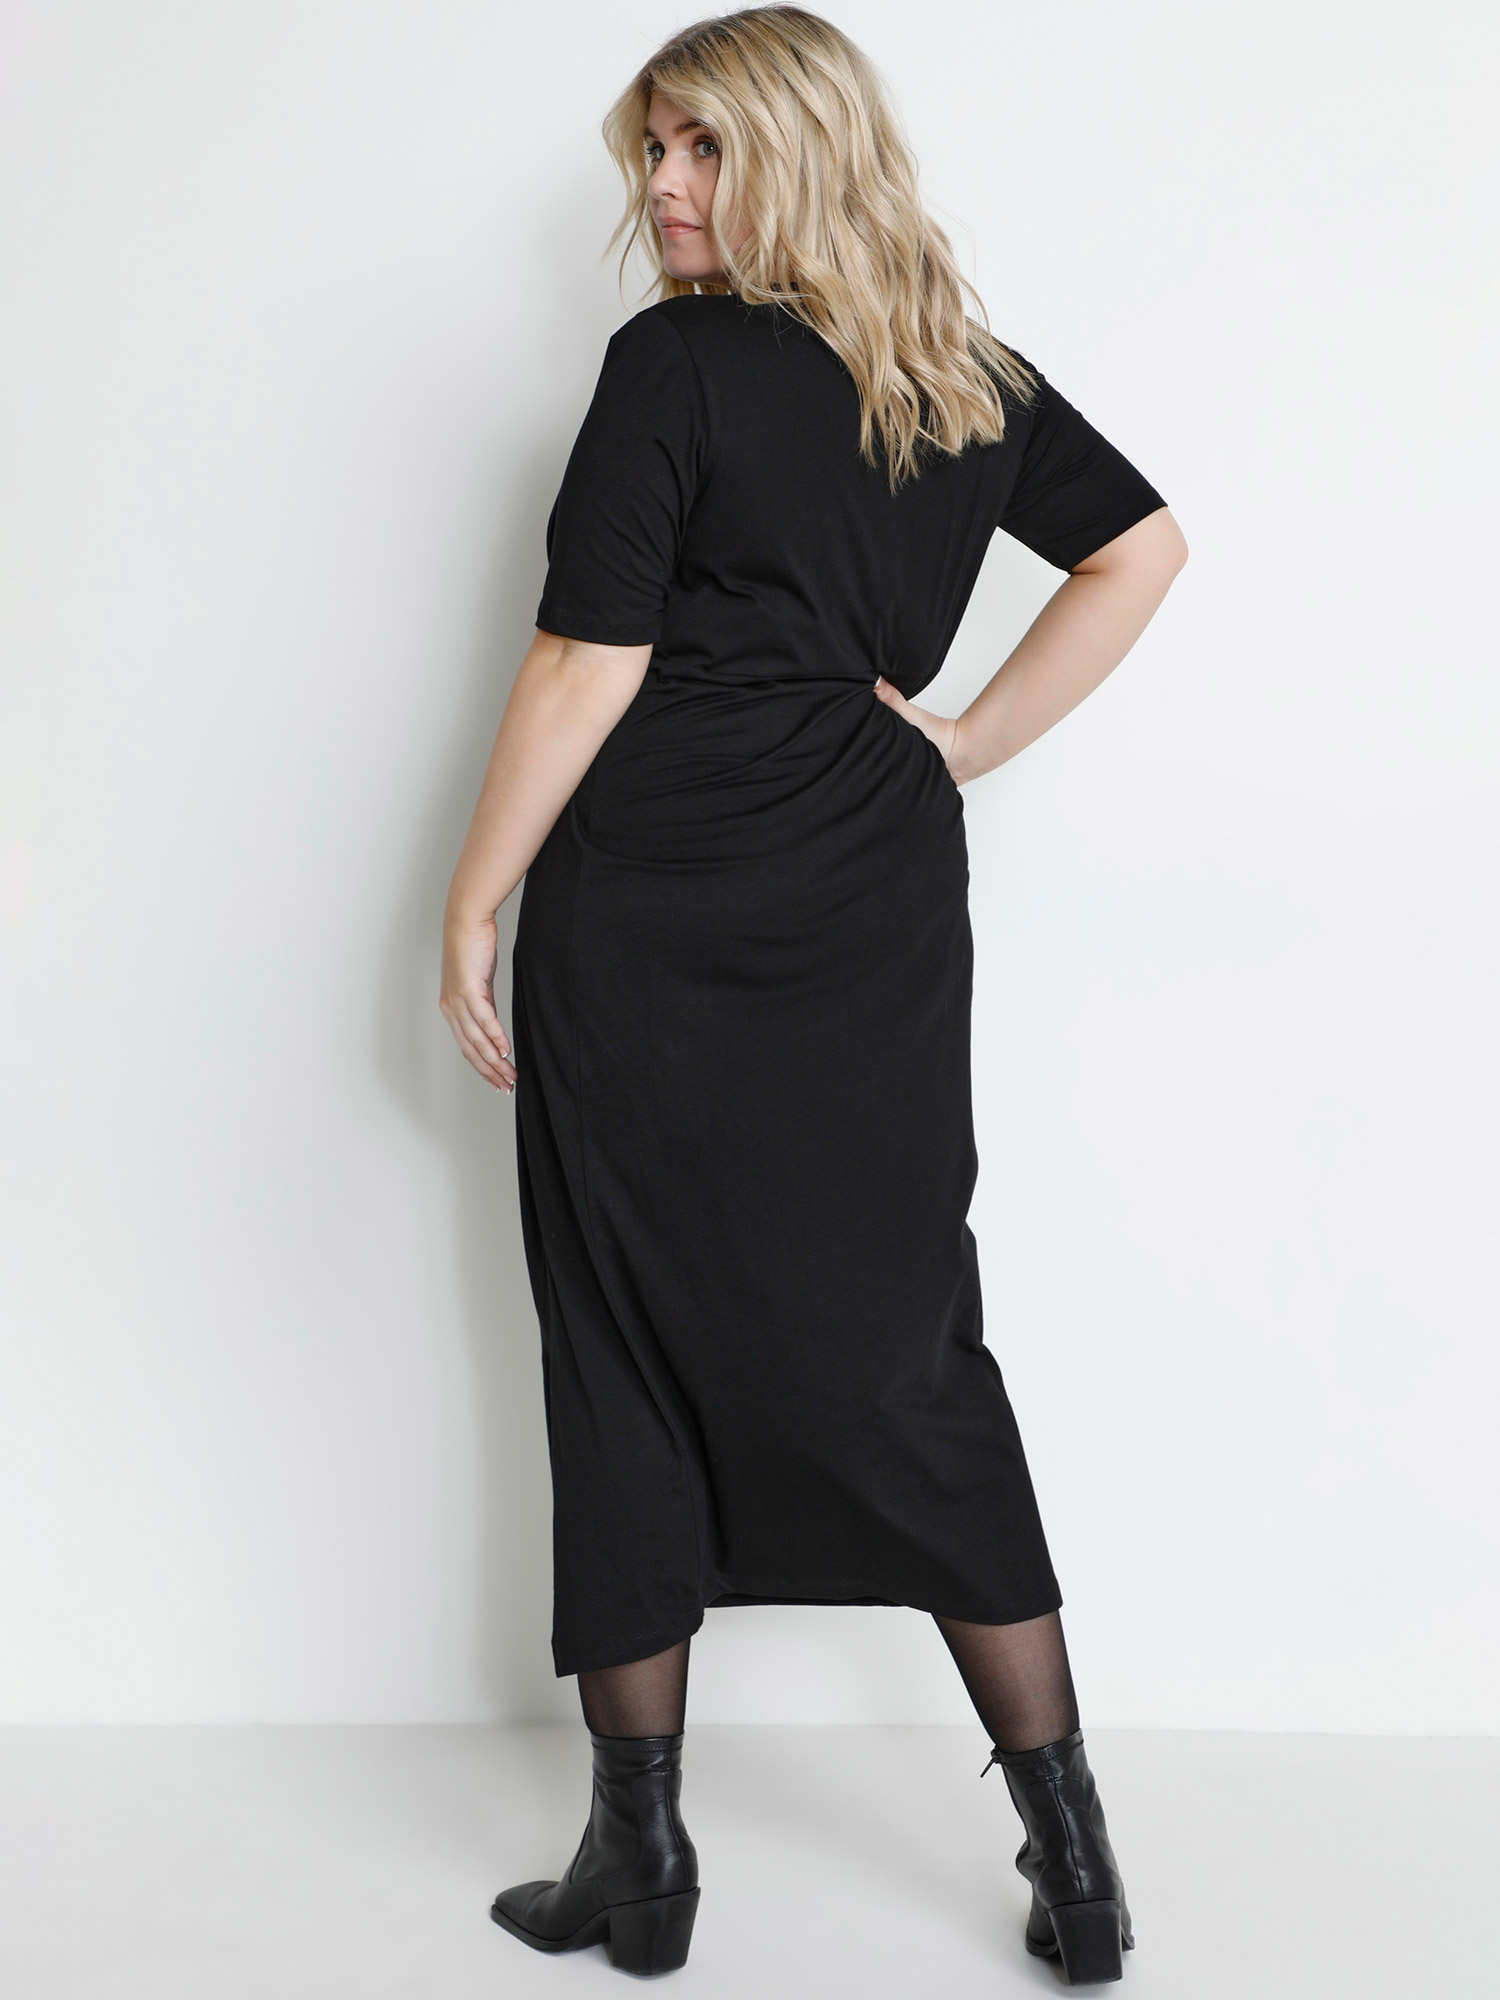 KCanette - Flott svart bomullsjersey kjole med knute fra Kaffe Curve